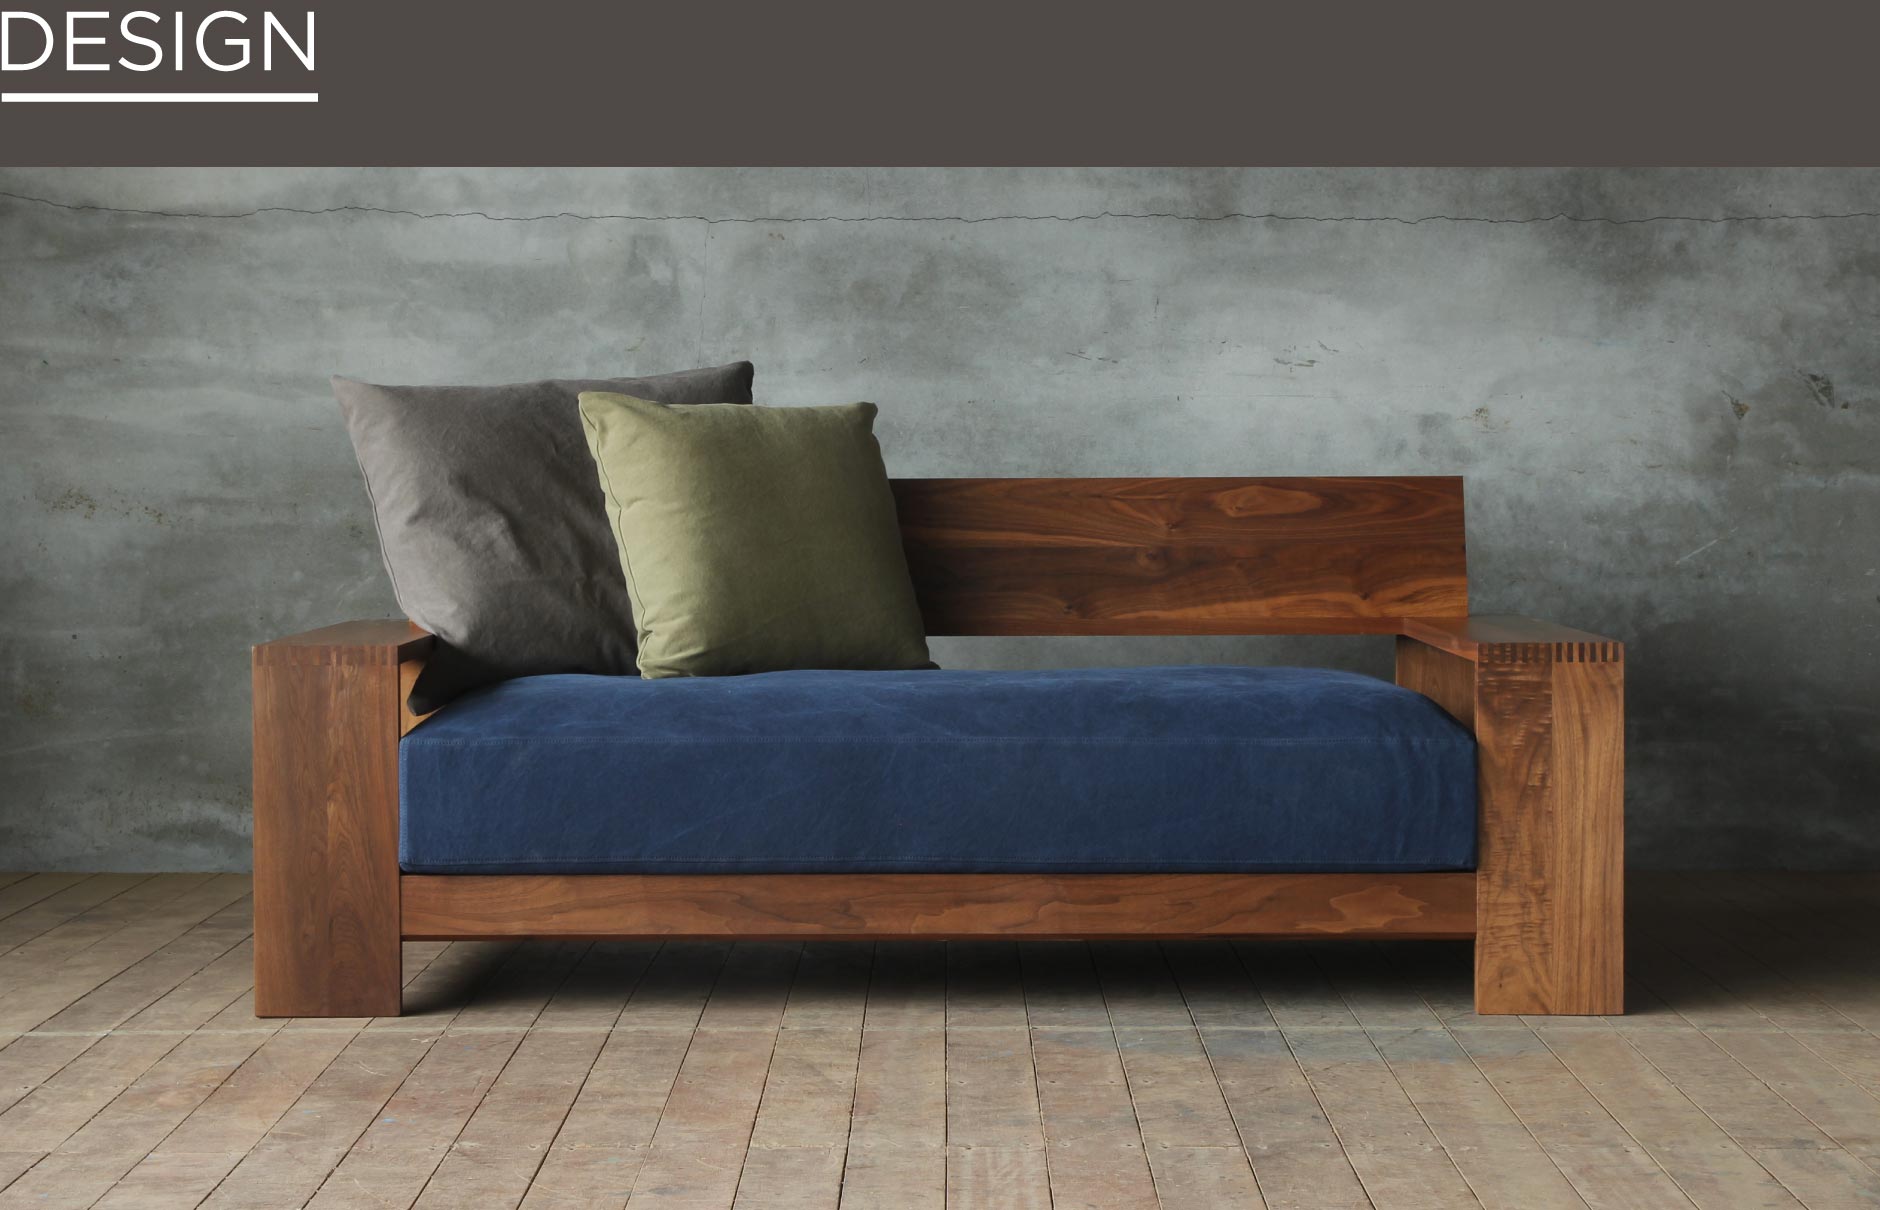 フレームは無垢材を贅沢に使用しており、重厚感があります。SOLID大阪の家具の中でも幅広のアームは一際存在感があるソファです。